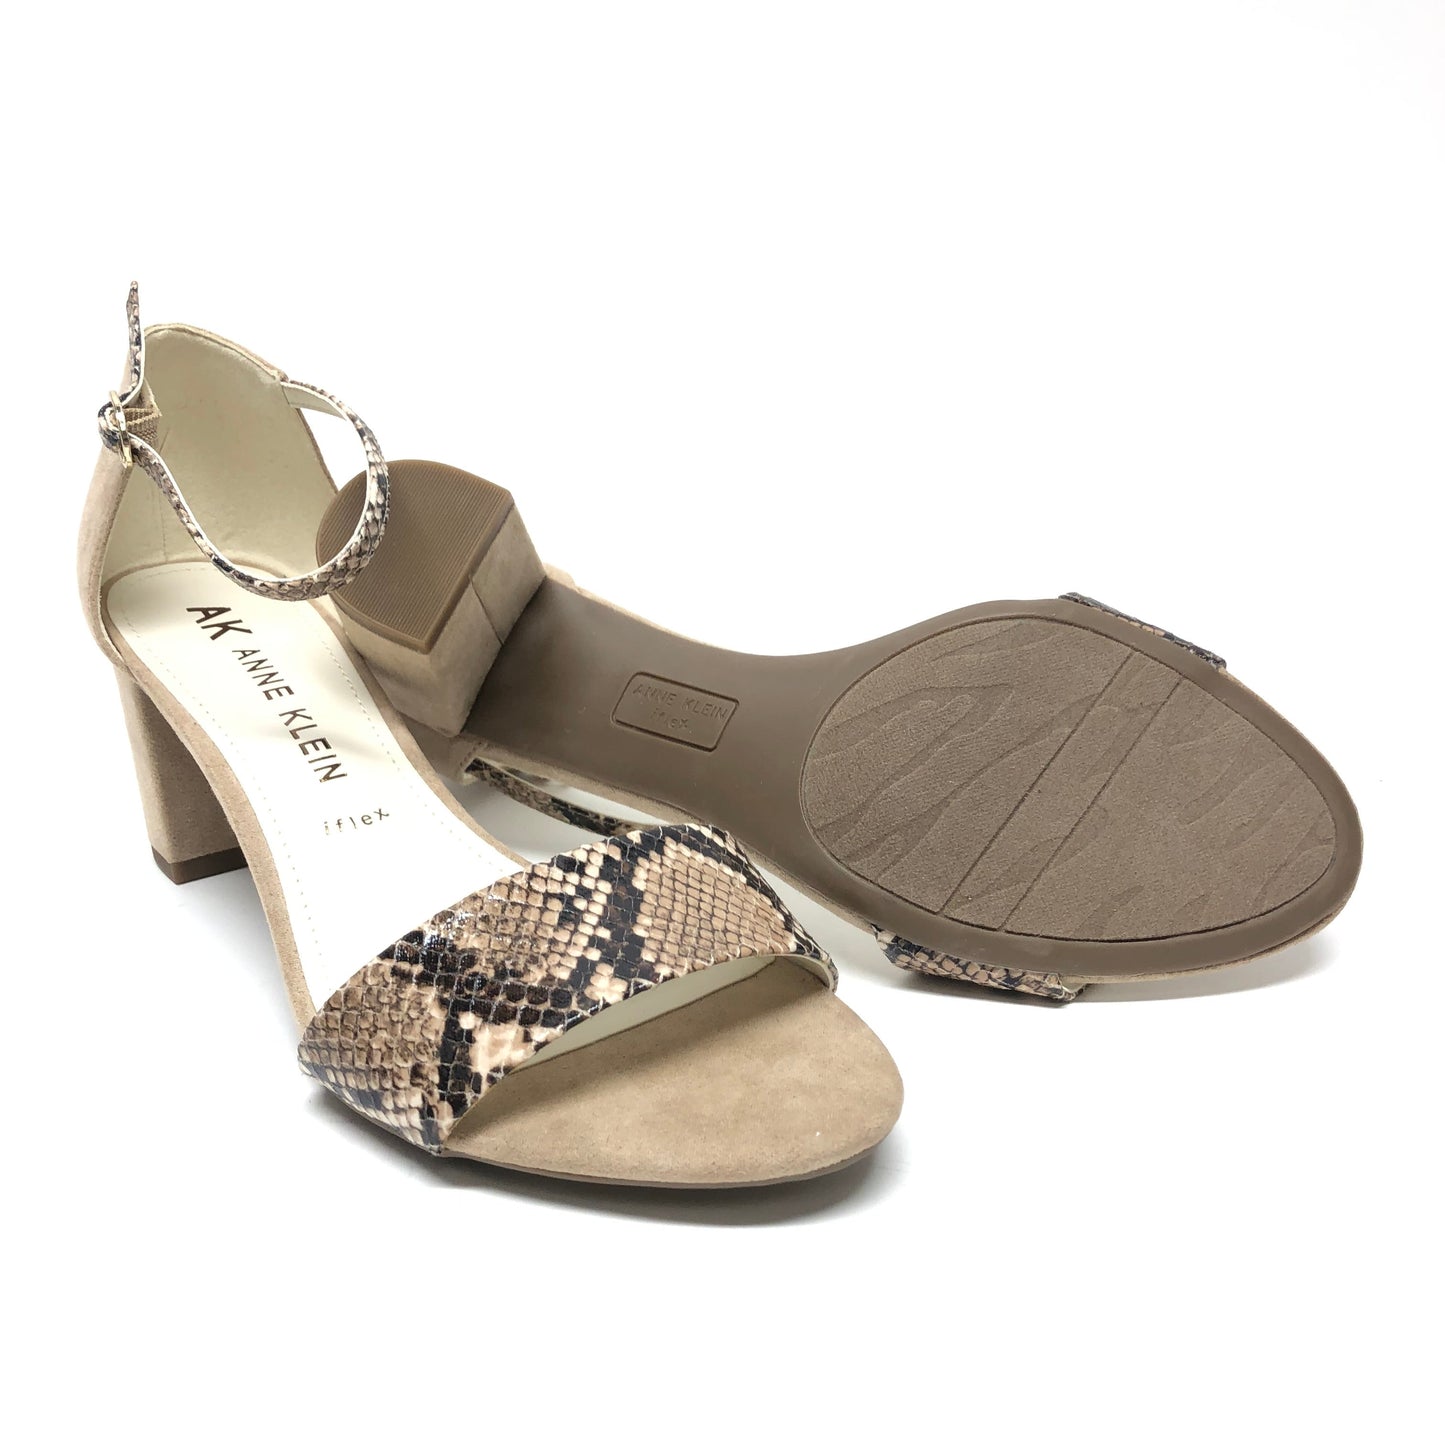 Sandals Heels Block By Anne Klein  Size: 8.5